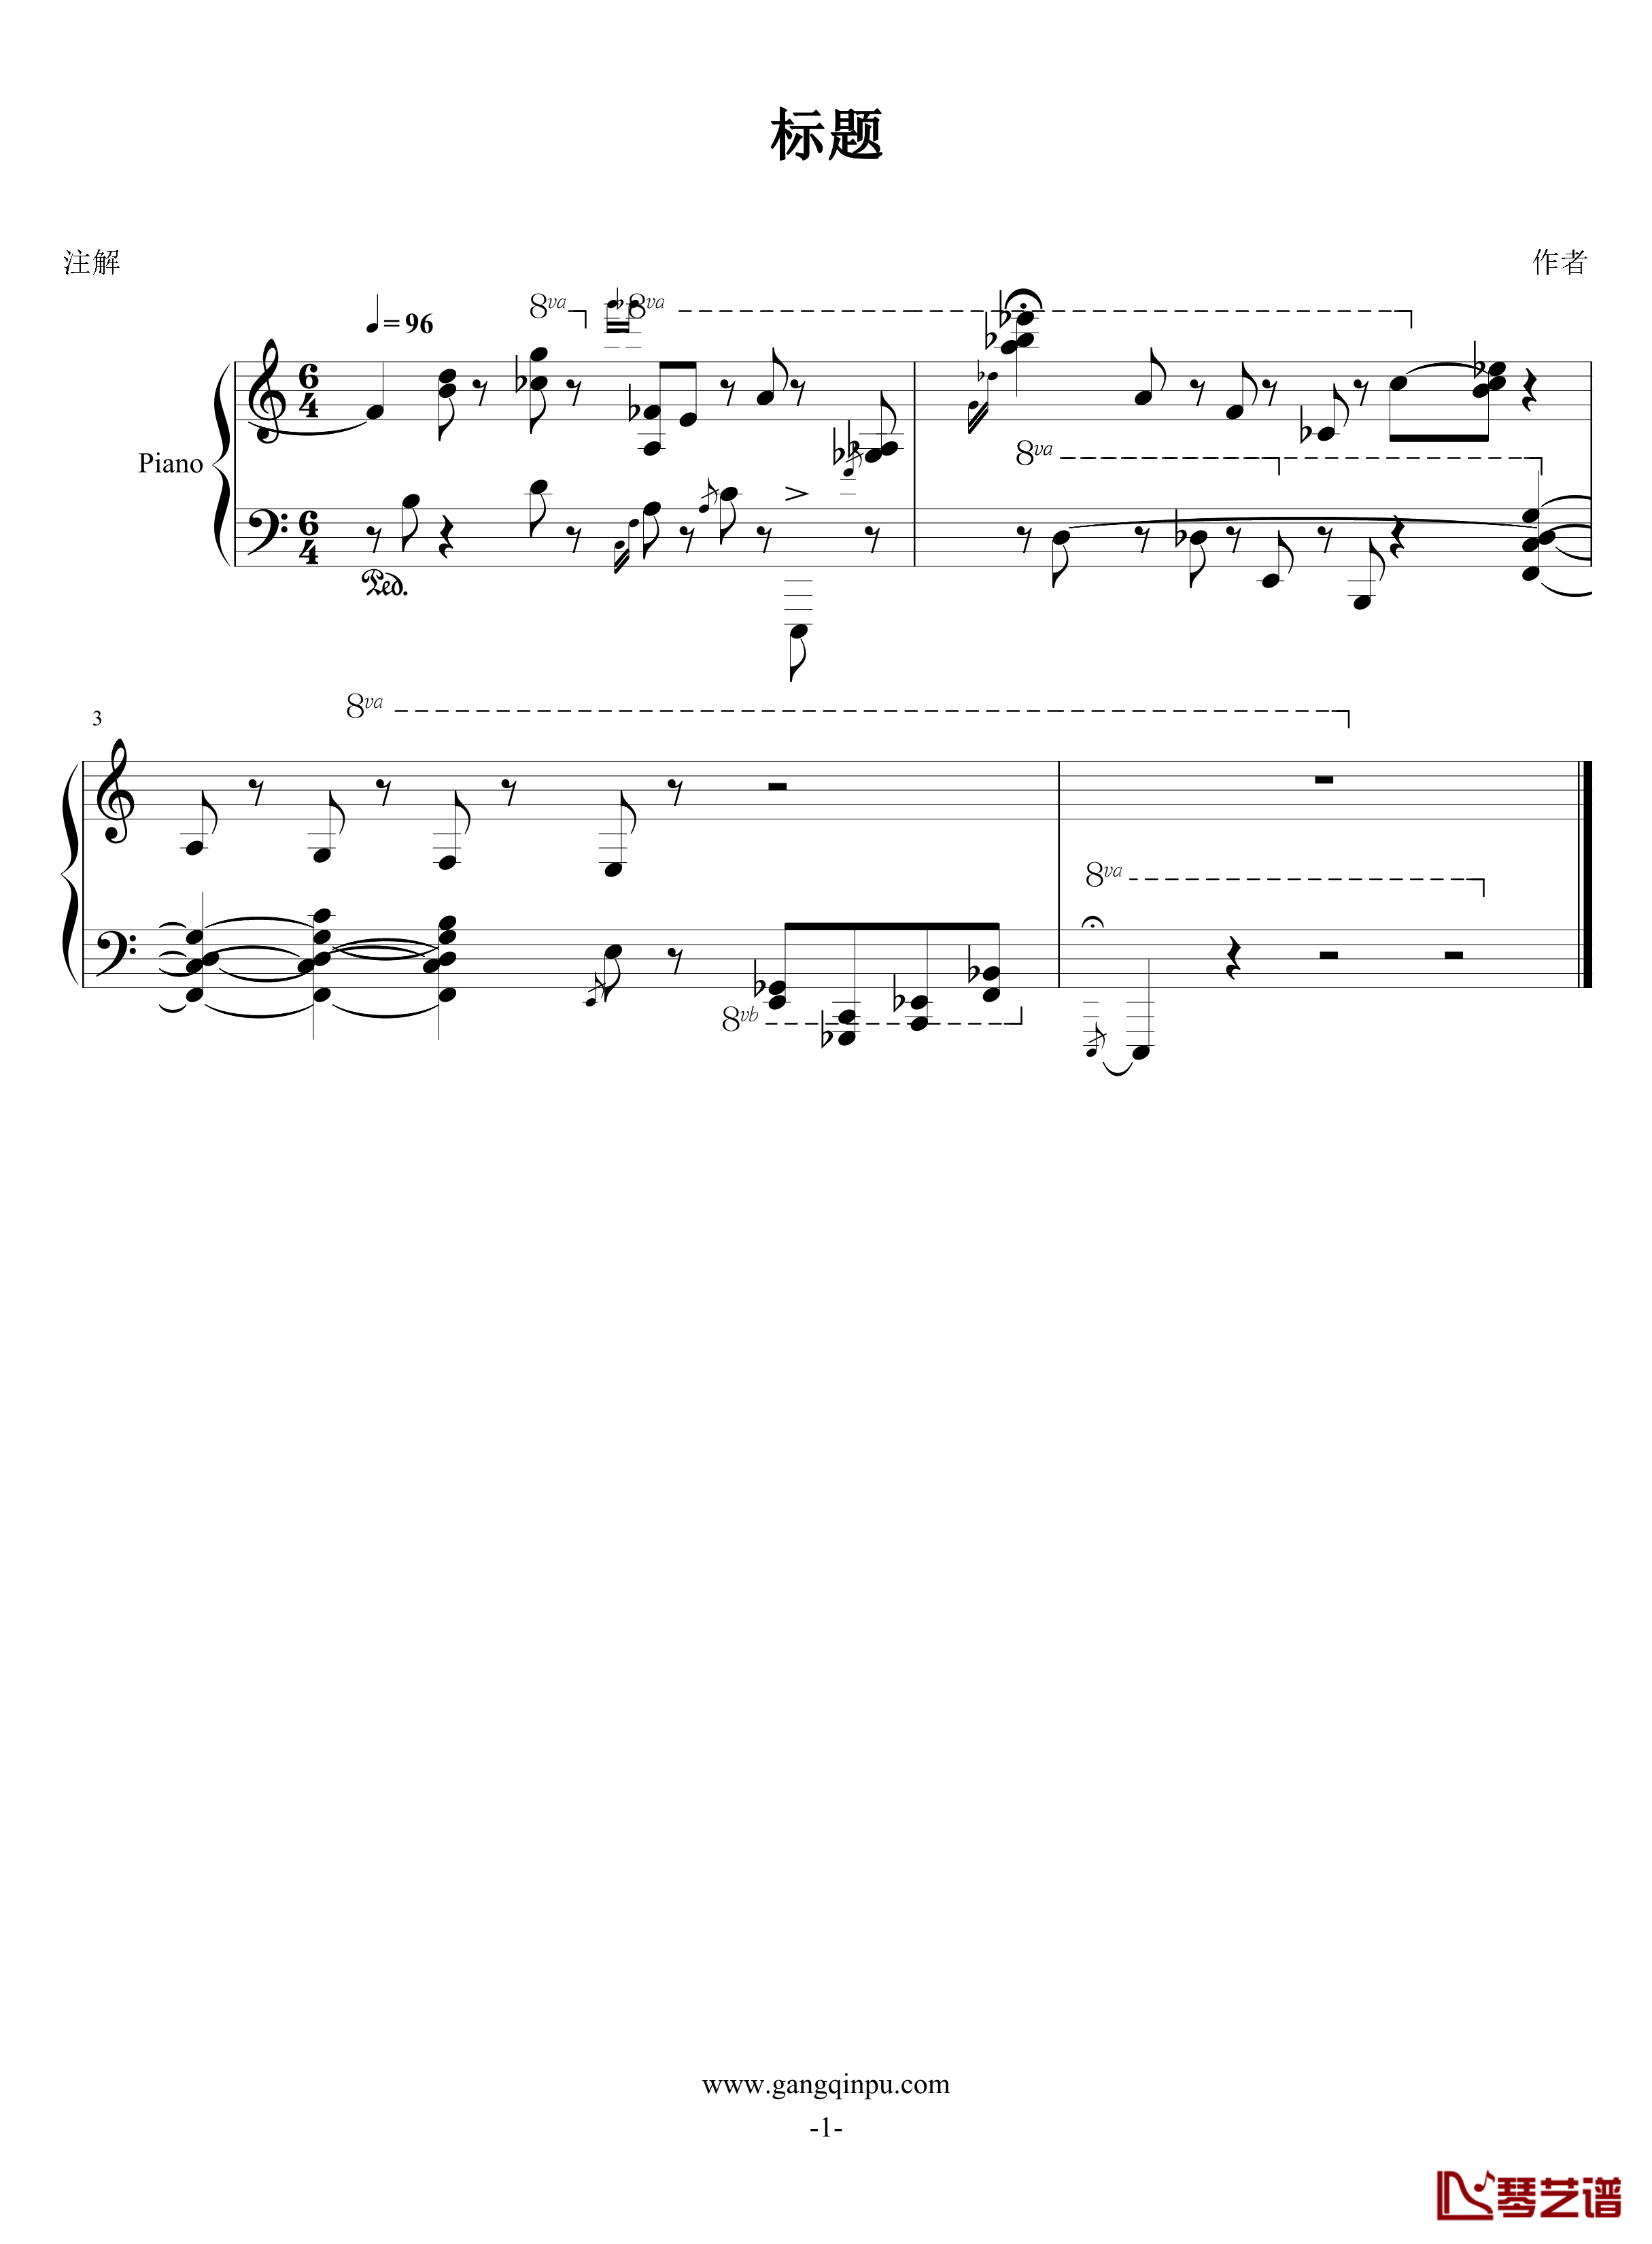 绝望钢琴谱-FIRSTONE1